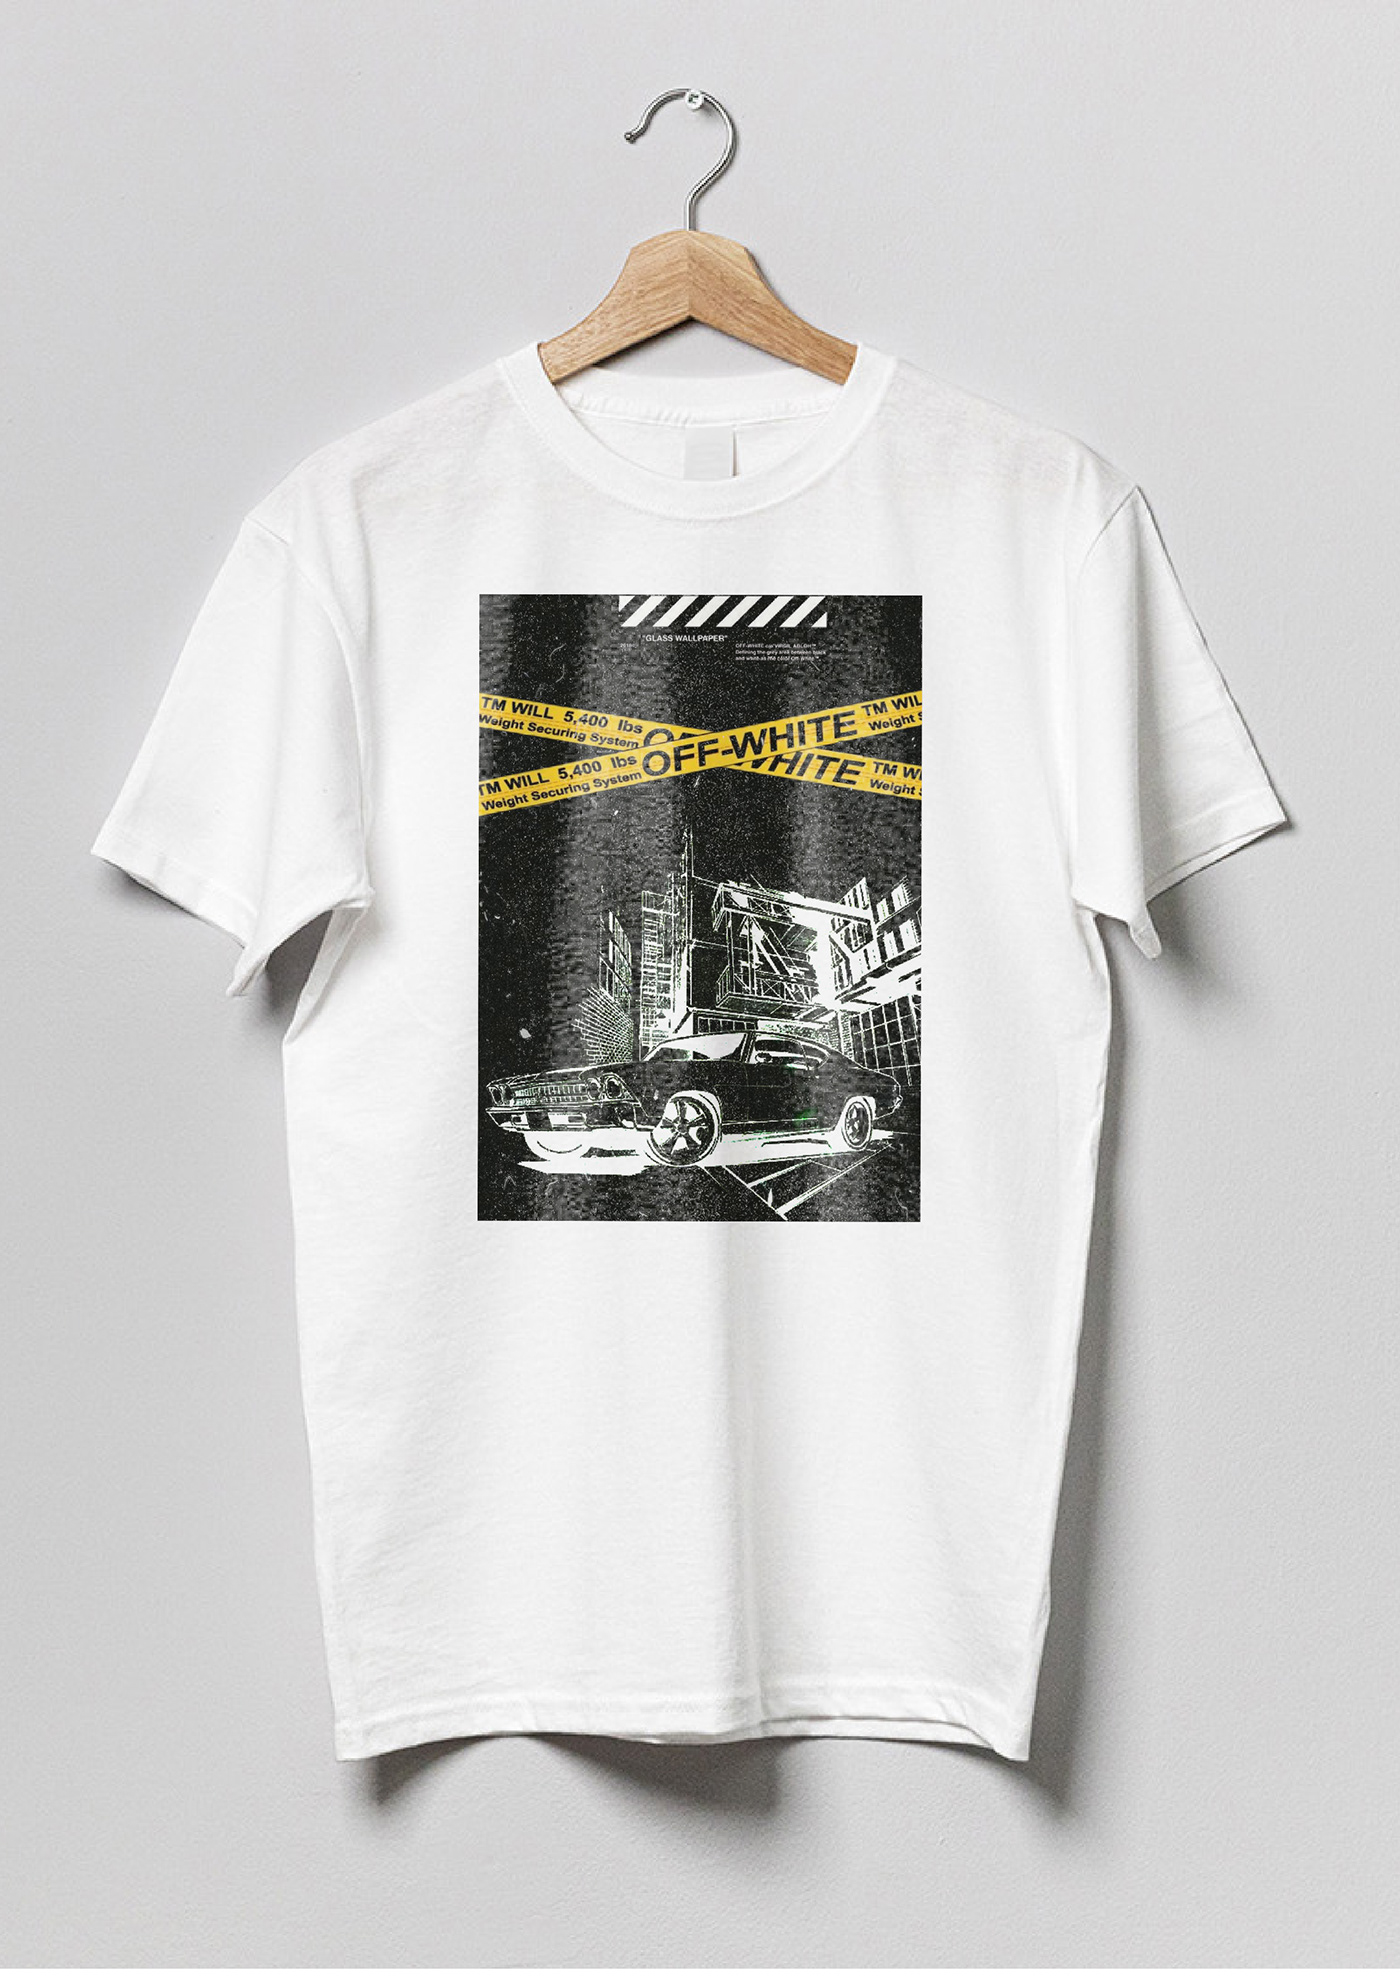 t-shirt Tshirt Design Clothing apparel Tshirt design ideas Mockup carart